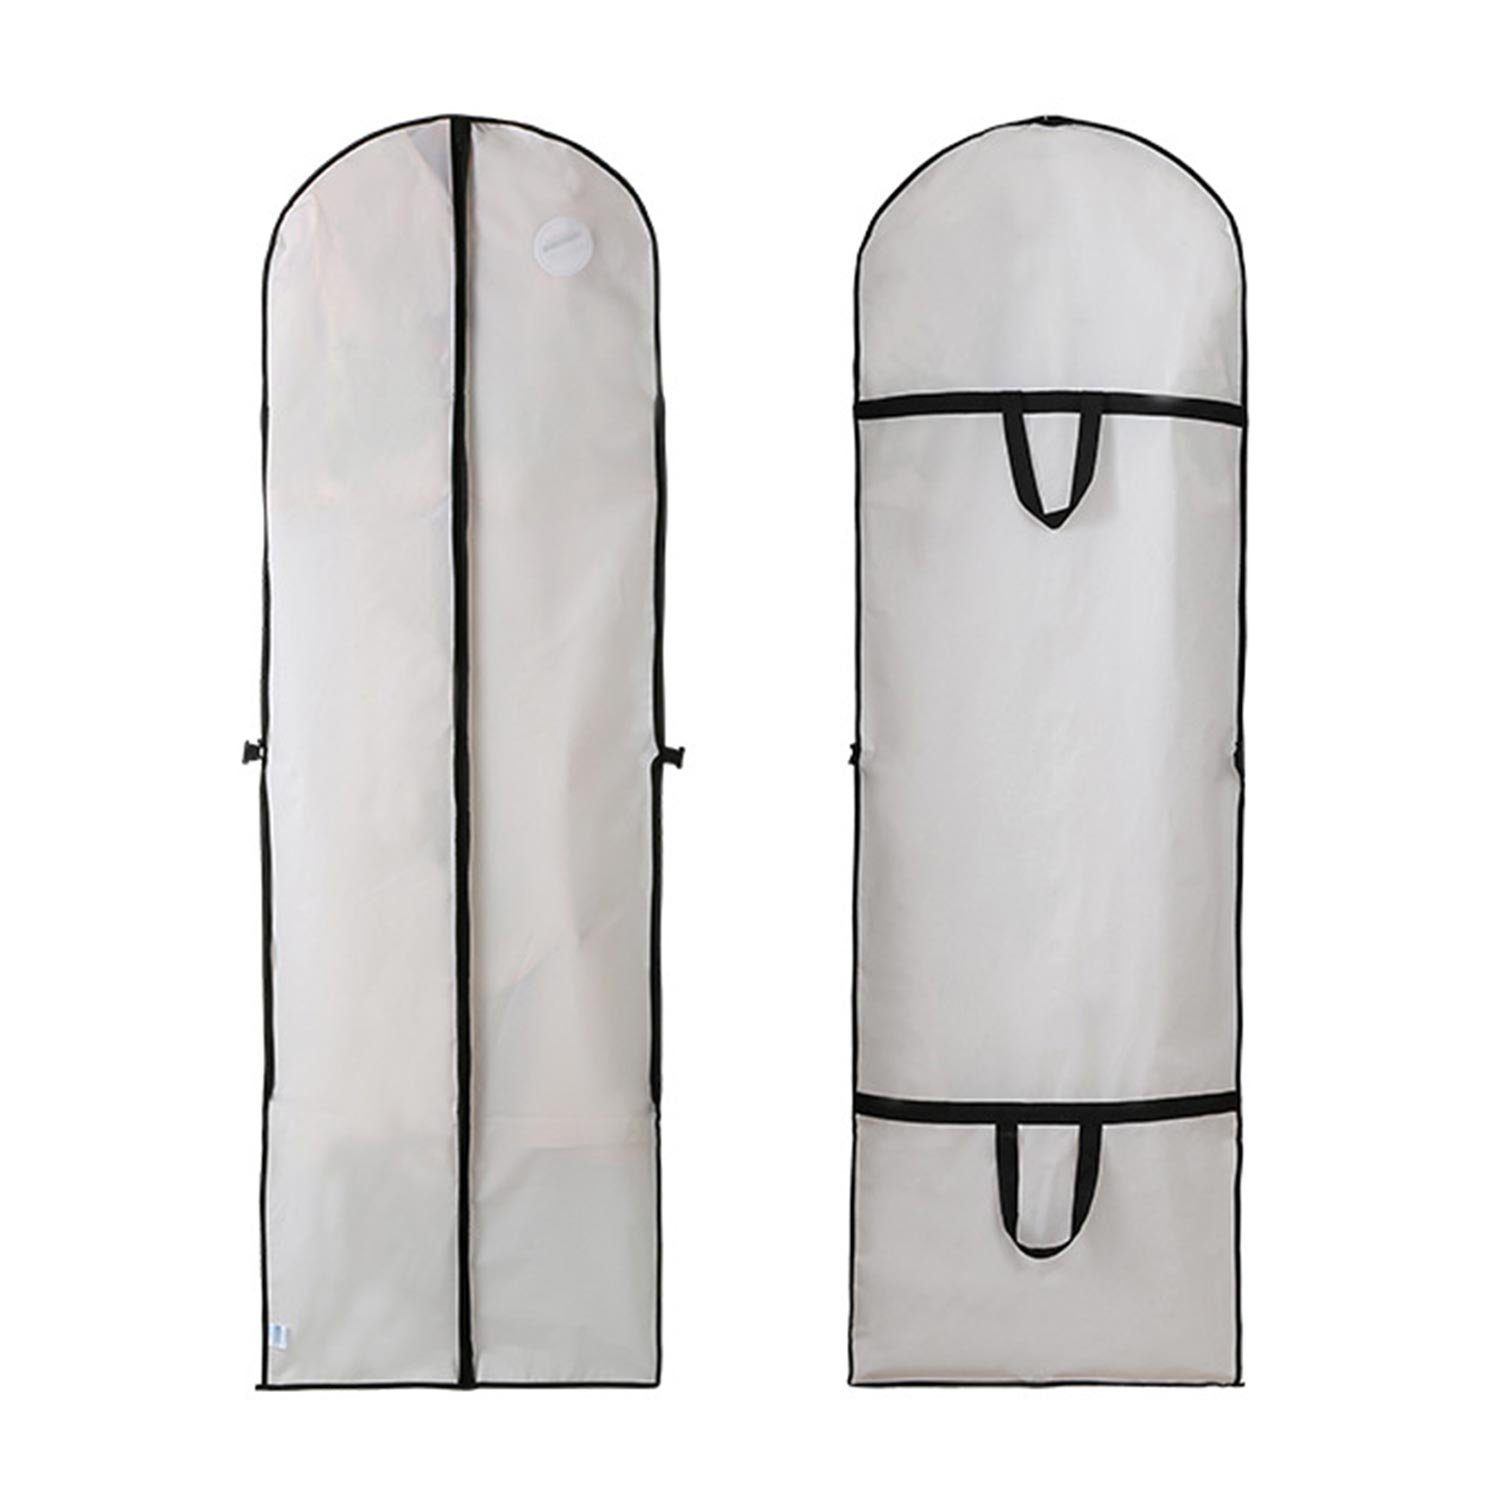 Schutzhülle Staubbeutel für 180x60cm Kleidung, MAGICSHE Transparenter weiß Kleidersack